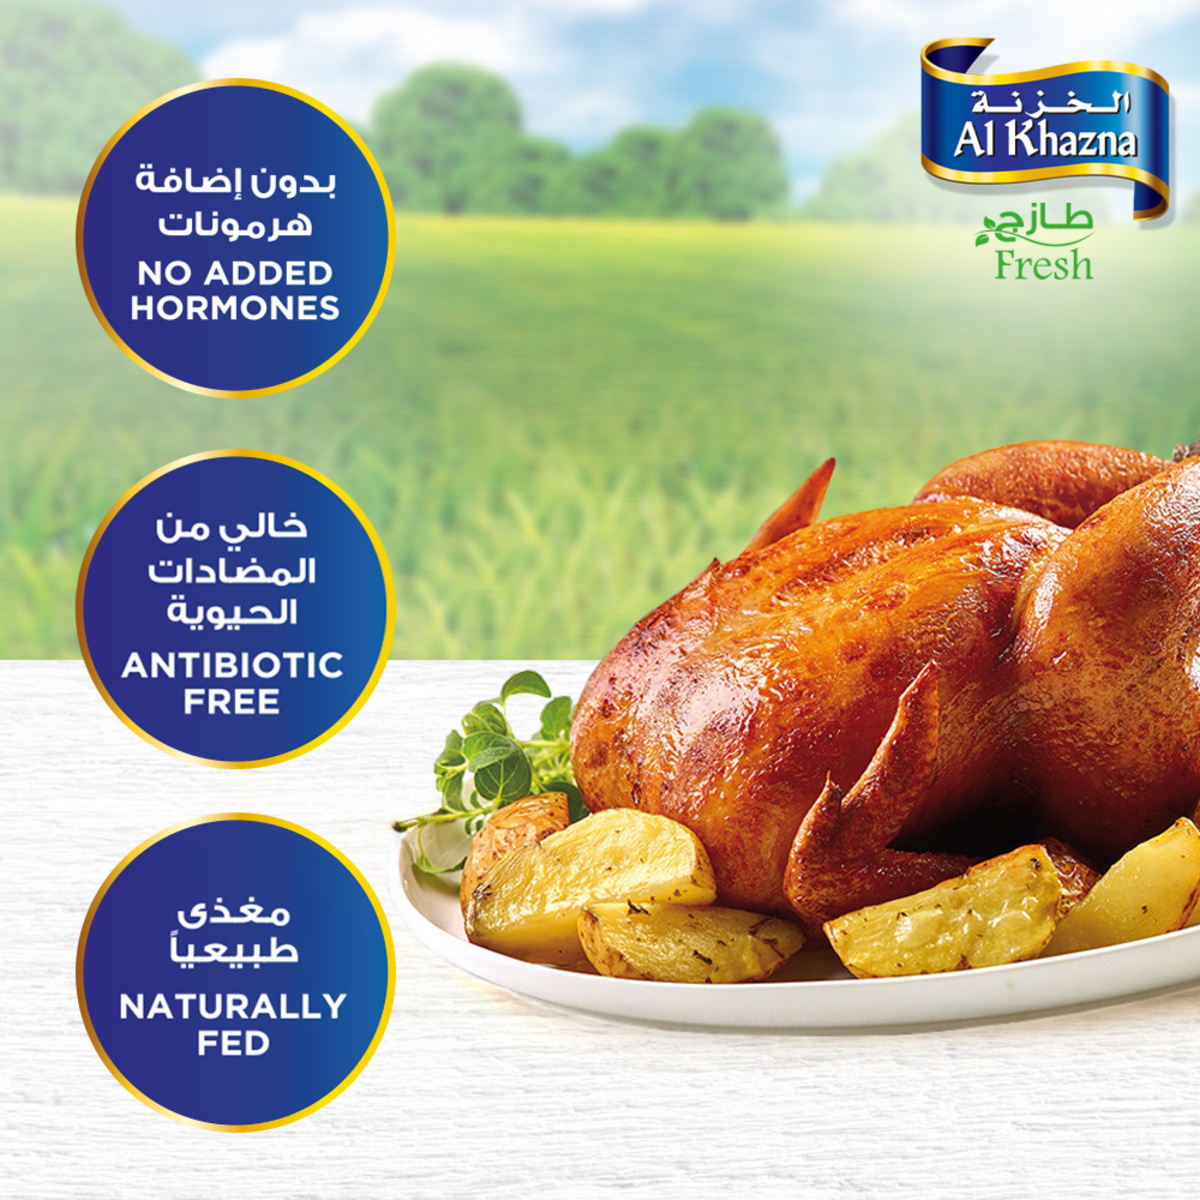 Al Khazna Fresh Whole Chicken 700g